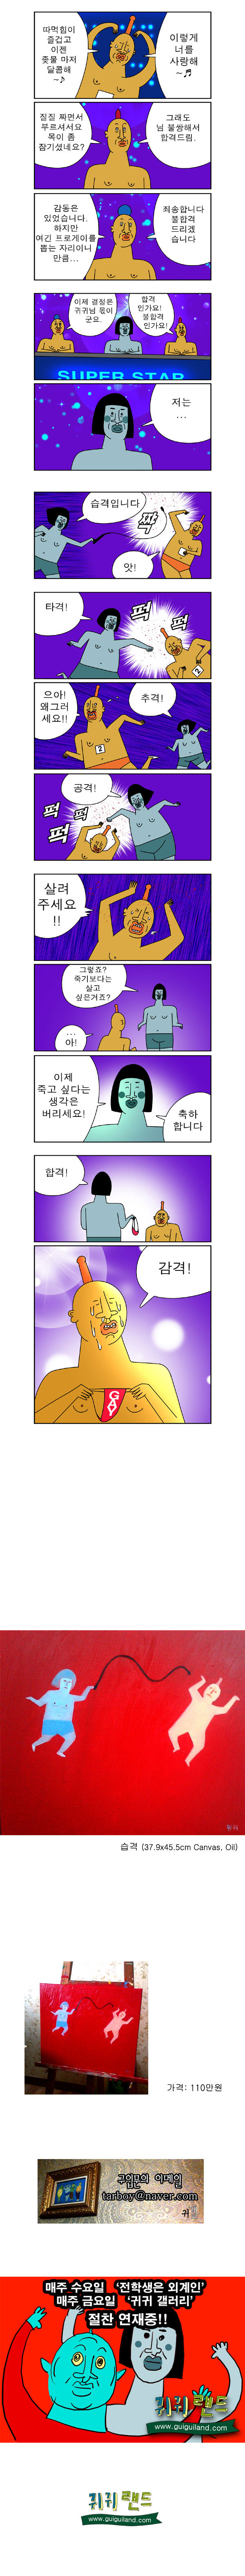 귀귀) 슈퍼스타 게이.manhwa